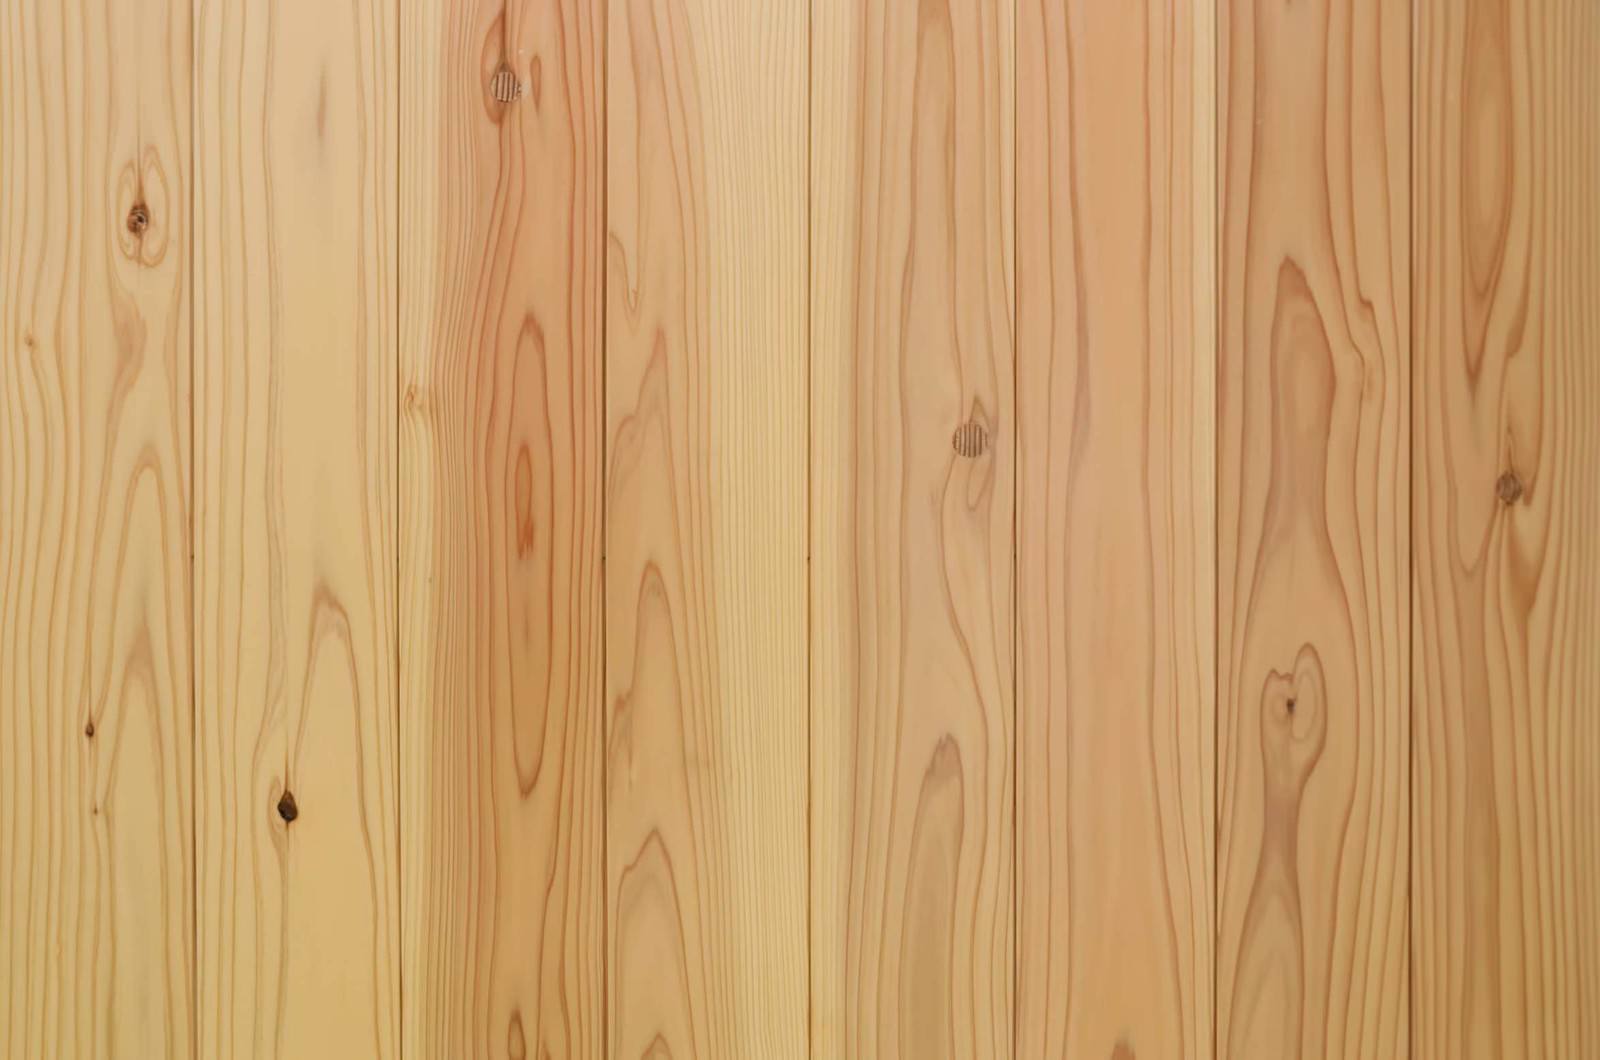 「木目のテクスチャー | フリー素材のぱくたそ」の写真